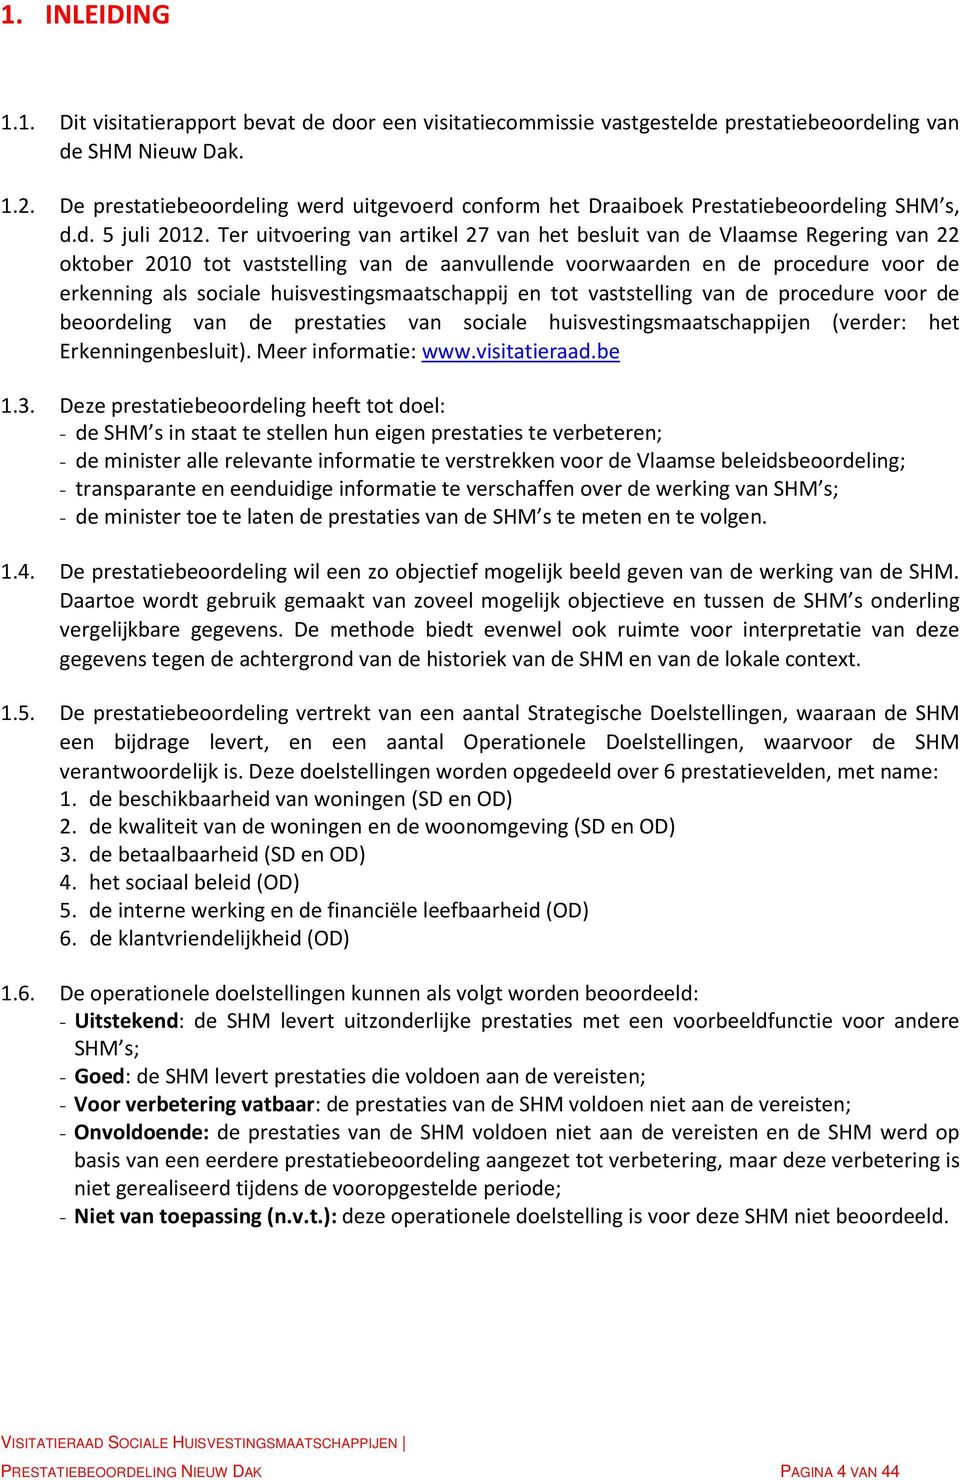 Ter uitvoering van artikel 27 van het besluit van de Vlaamse Regering van 22 oktober 2010 tot vaststelling van de aanvullende voorwaarden en de procedure voor de erkenning als sociale